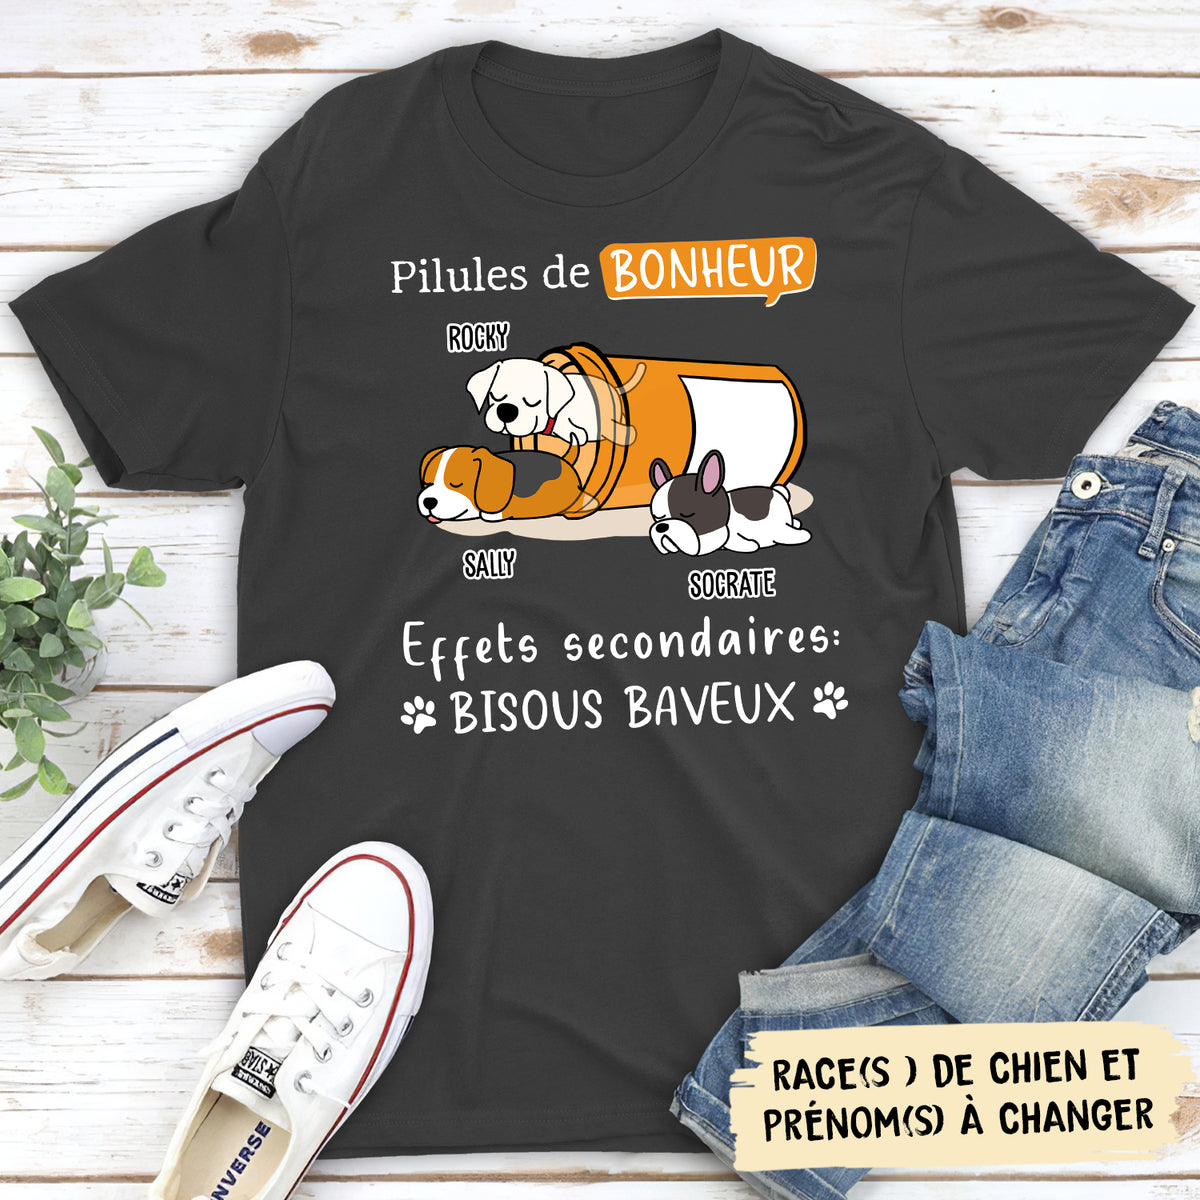 T-shirt Unisex Personnalisé - Pilule Bonheur - Version 2